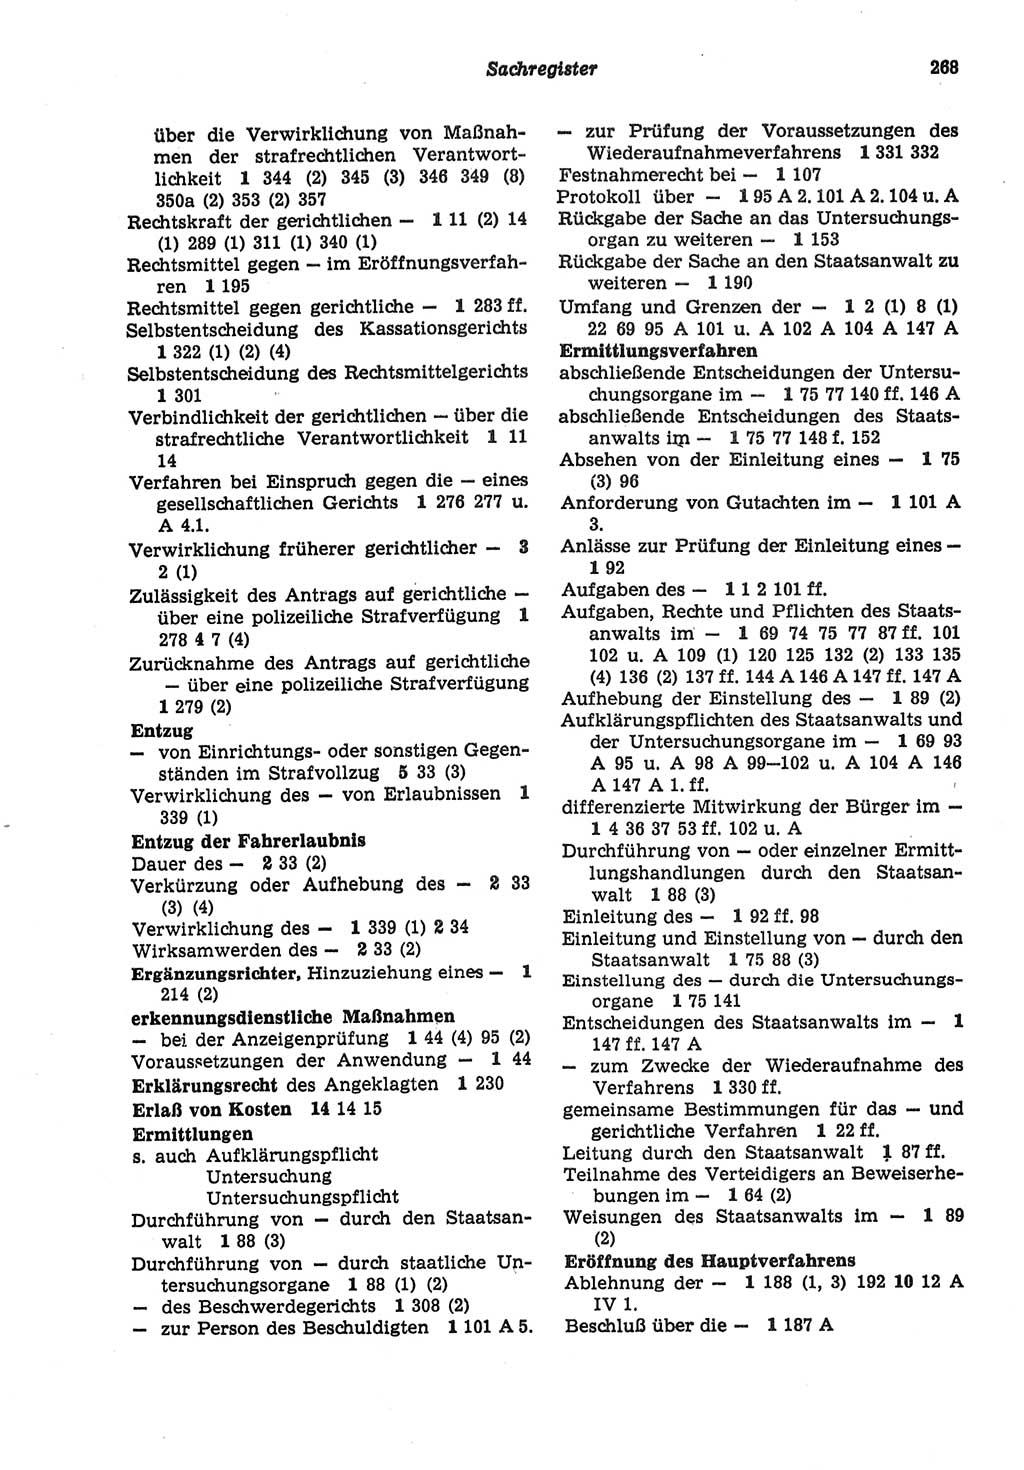 Strafprozeßordnung (StPO) der Deutschen Demokratischen Republik (DDR) sowie angrenzende Gesetze und Bestimmungen 1977, Seite 268 (StPO DDR Ges. Best. 1977, S. 268)